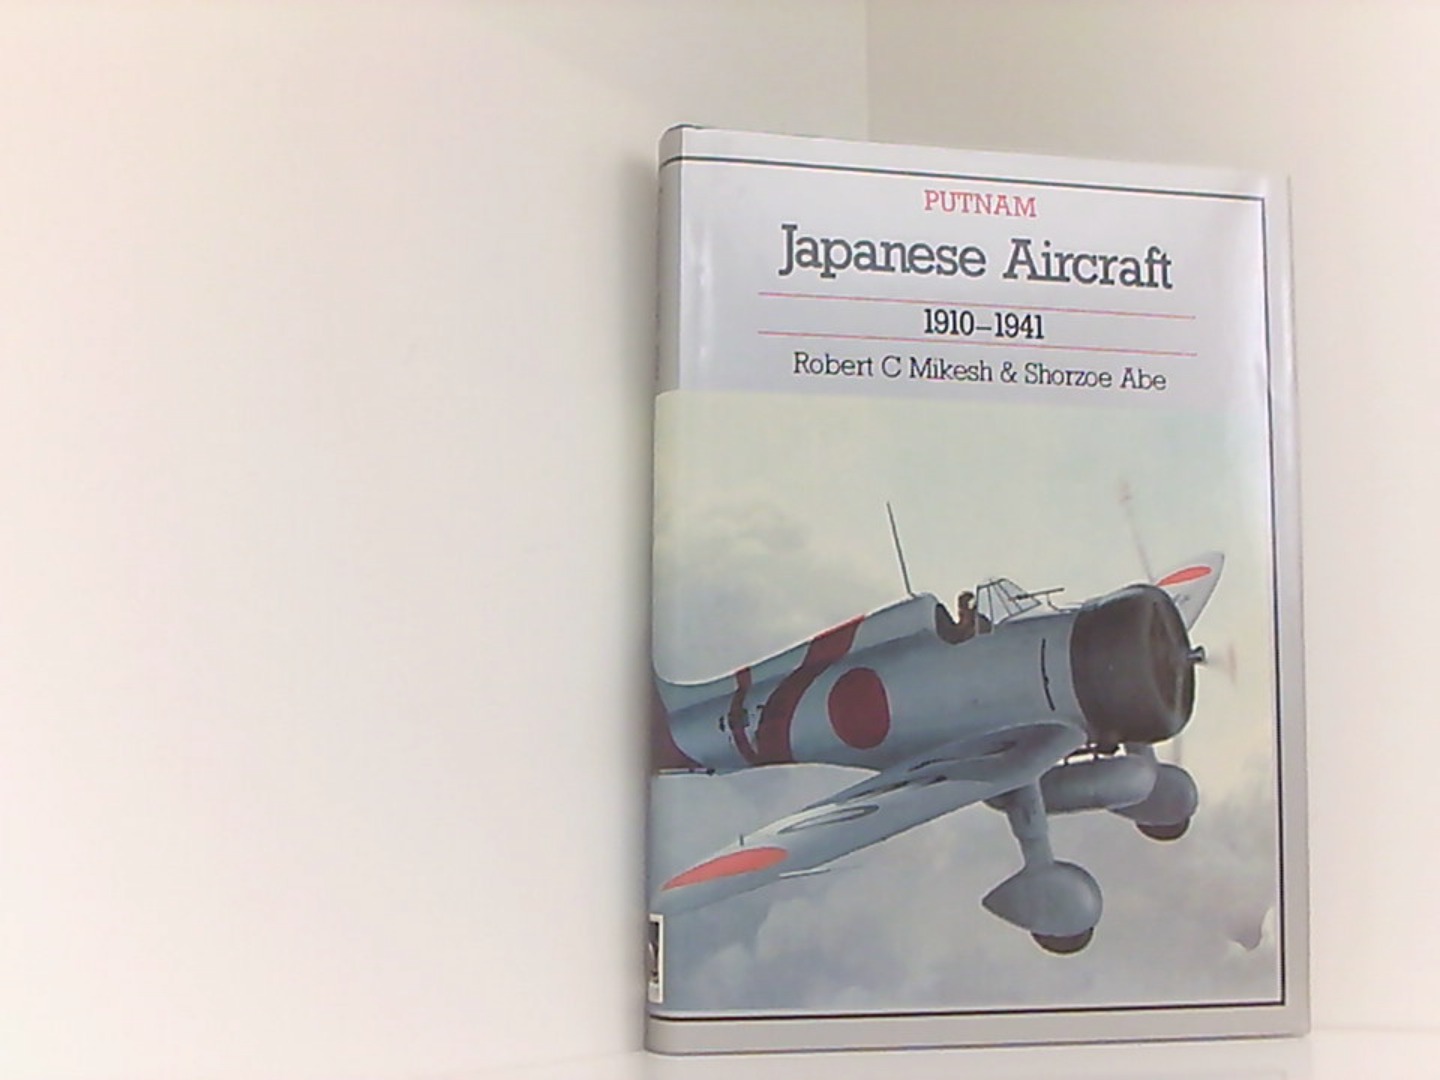 JAPANESE AIRCRAFT 1910 1941 (Putnam's Japanese aircraft) - Mikesh Robert, C., A. Shorzoe und Shorzoe Abe